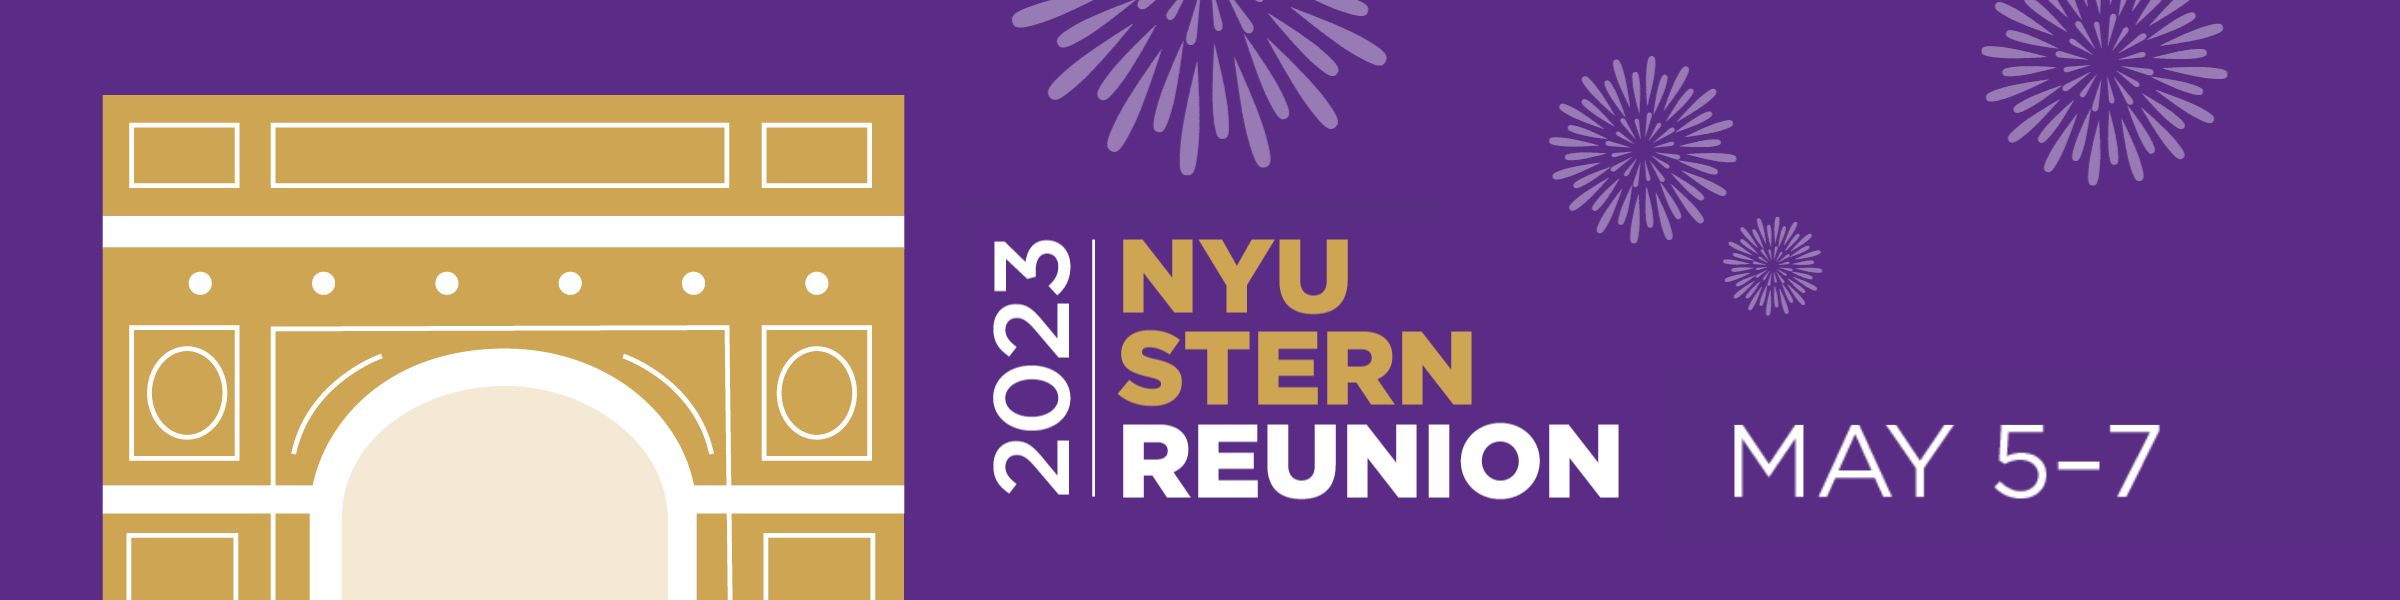 NYU Stern Class Book - Undergraduate Class of 2013